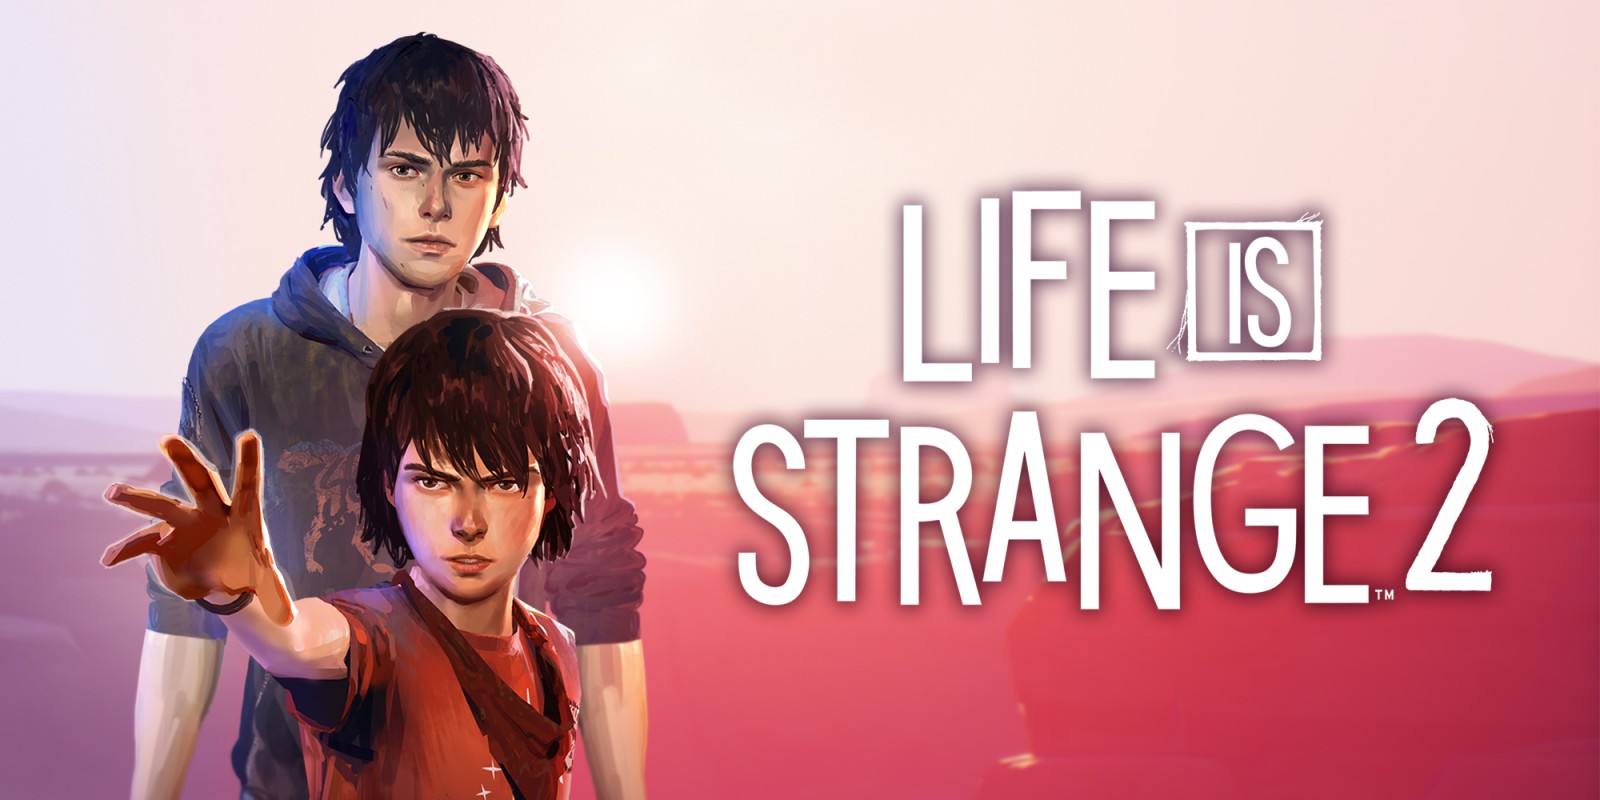 Life Is Strange 2 free Download PC Game (Full Version)